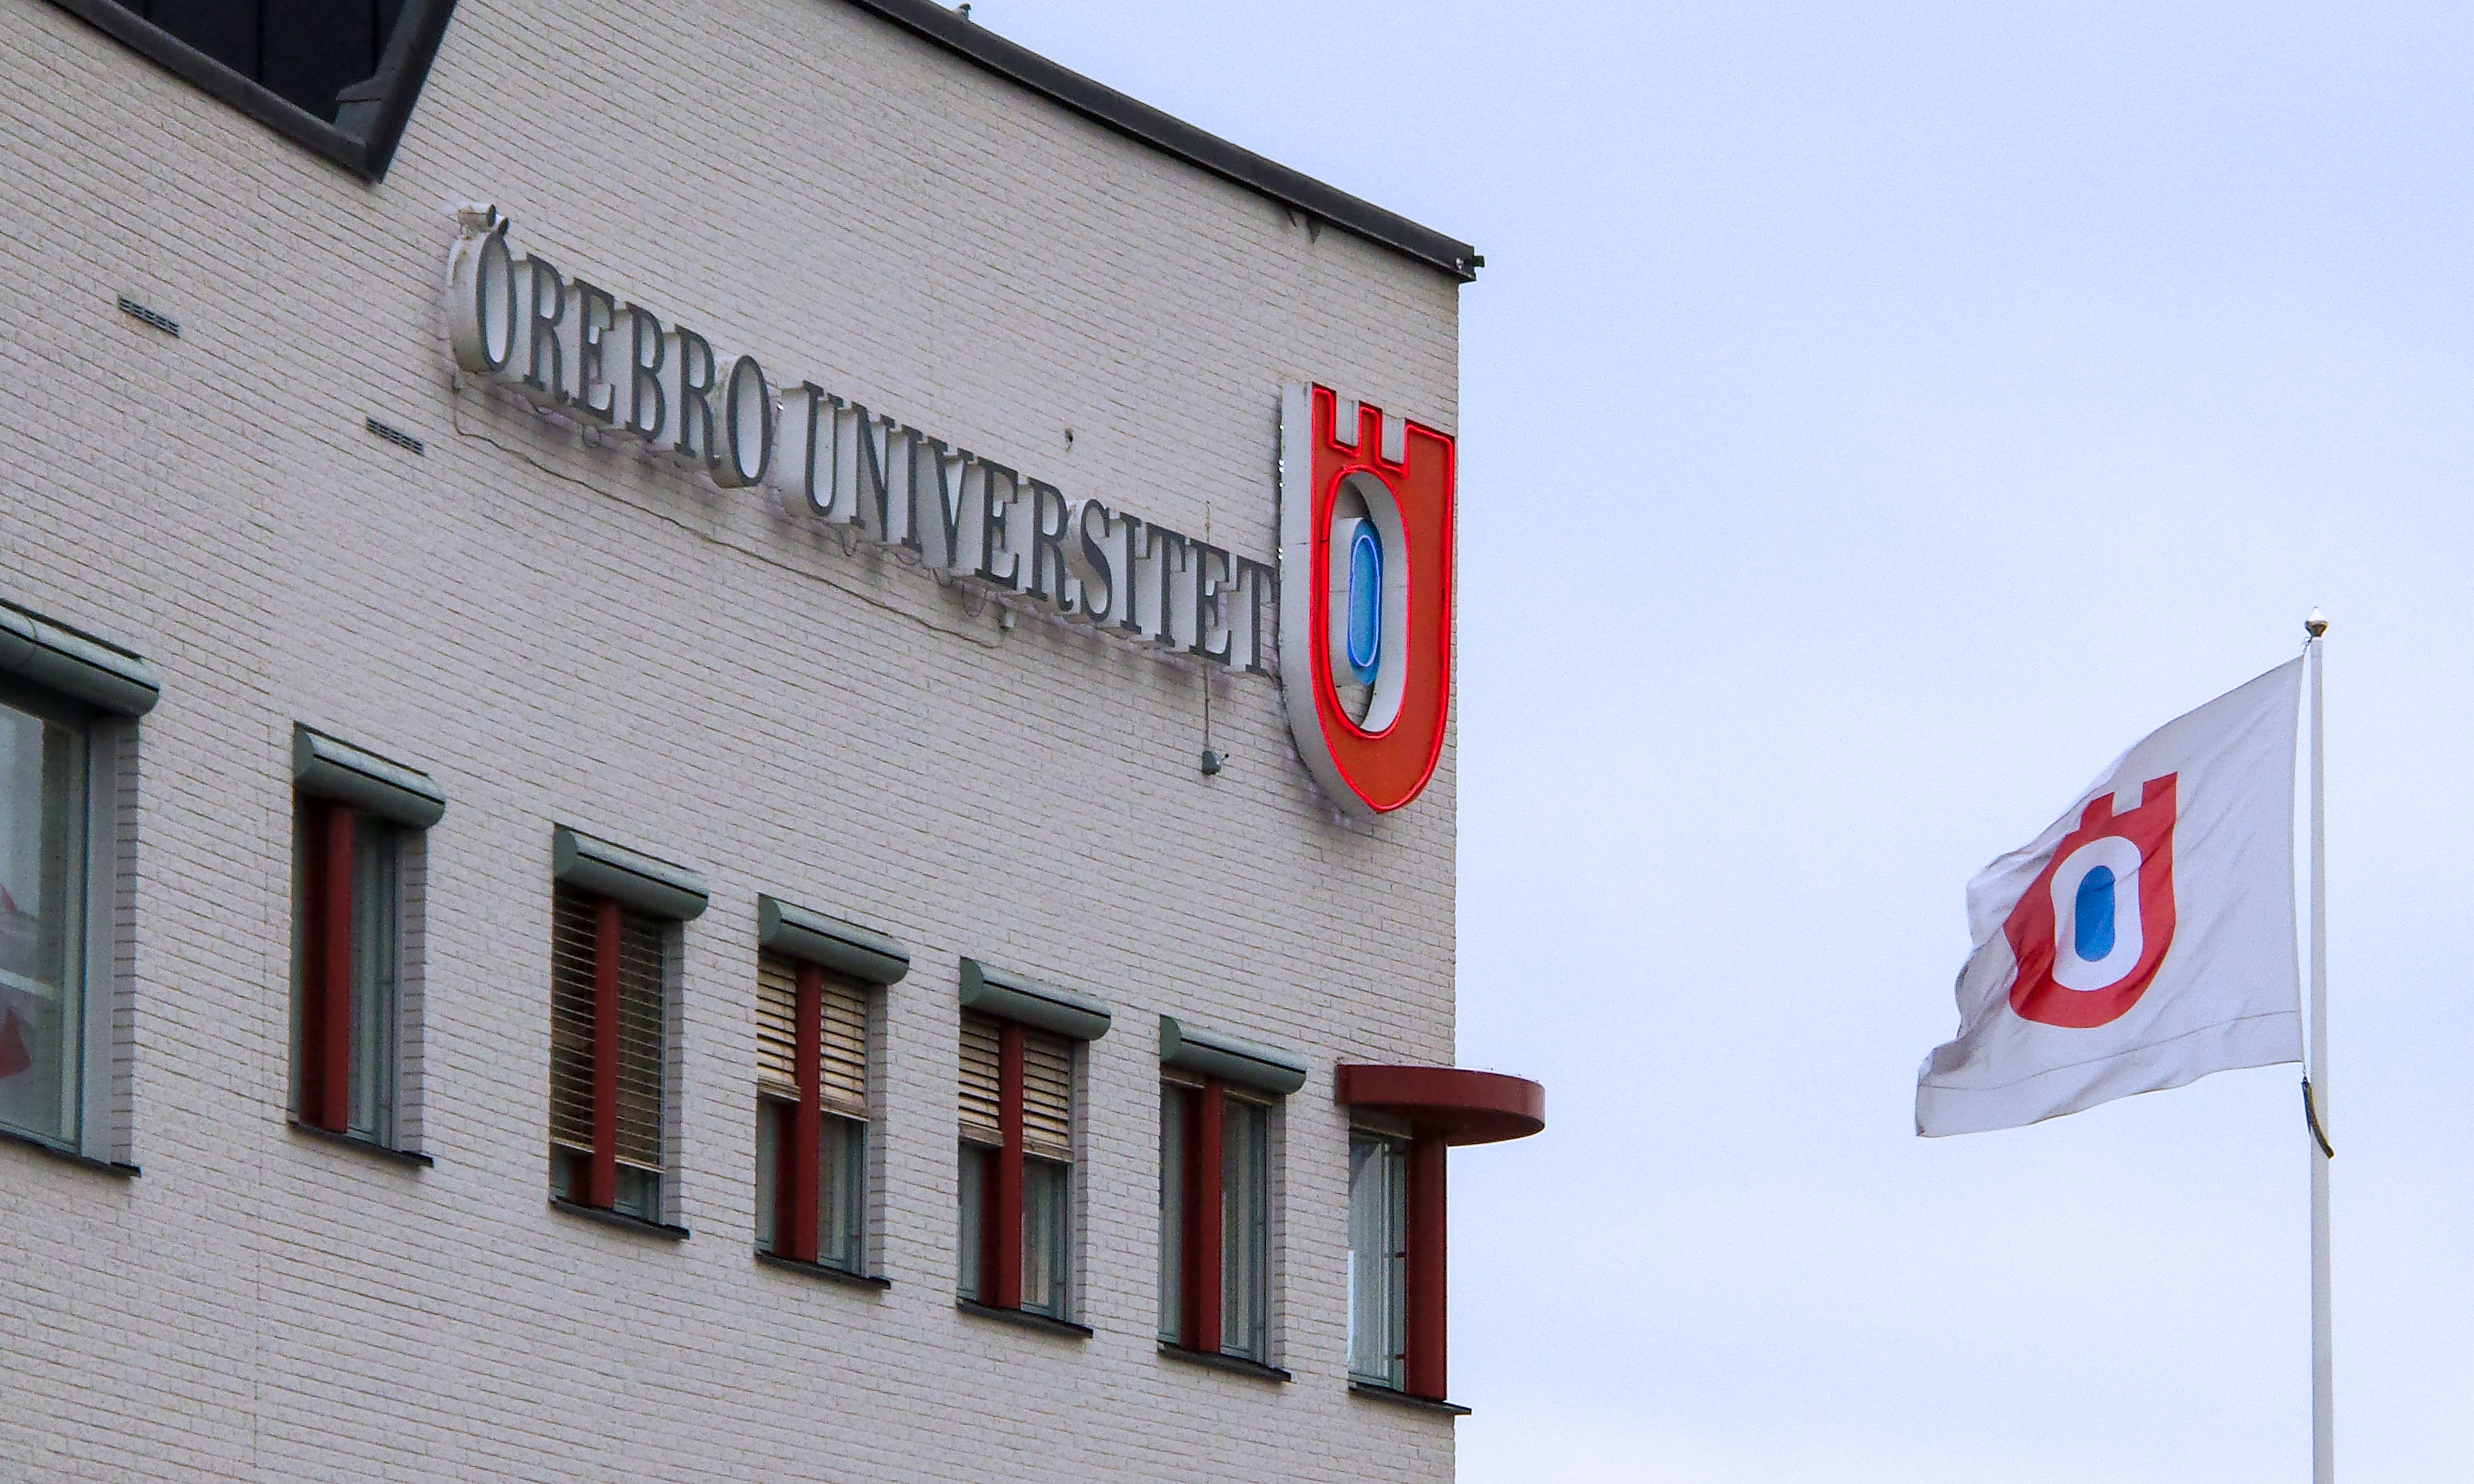 Konkurrensverket menar att Örebro universitet har gjort en otillåten direktupphandling av konsulttjänster. Därför går myndigheten till domstol och kräver att universitetet ska betala 150 000 kronor i upphandlingsskadeavgift.